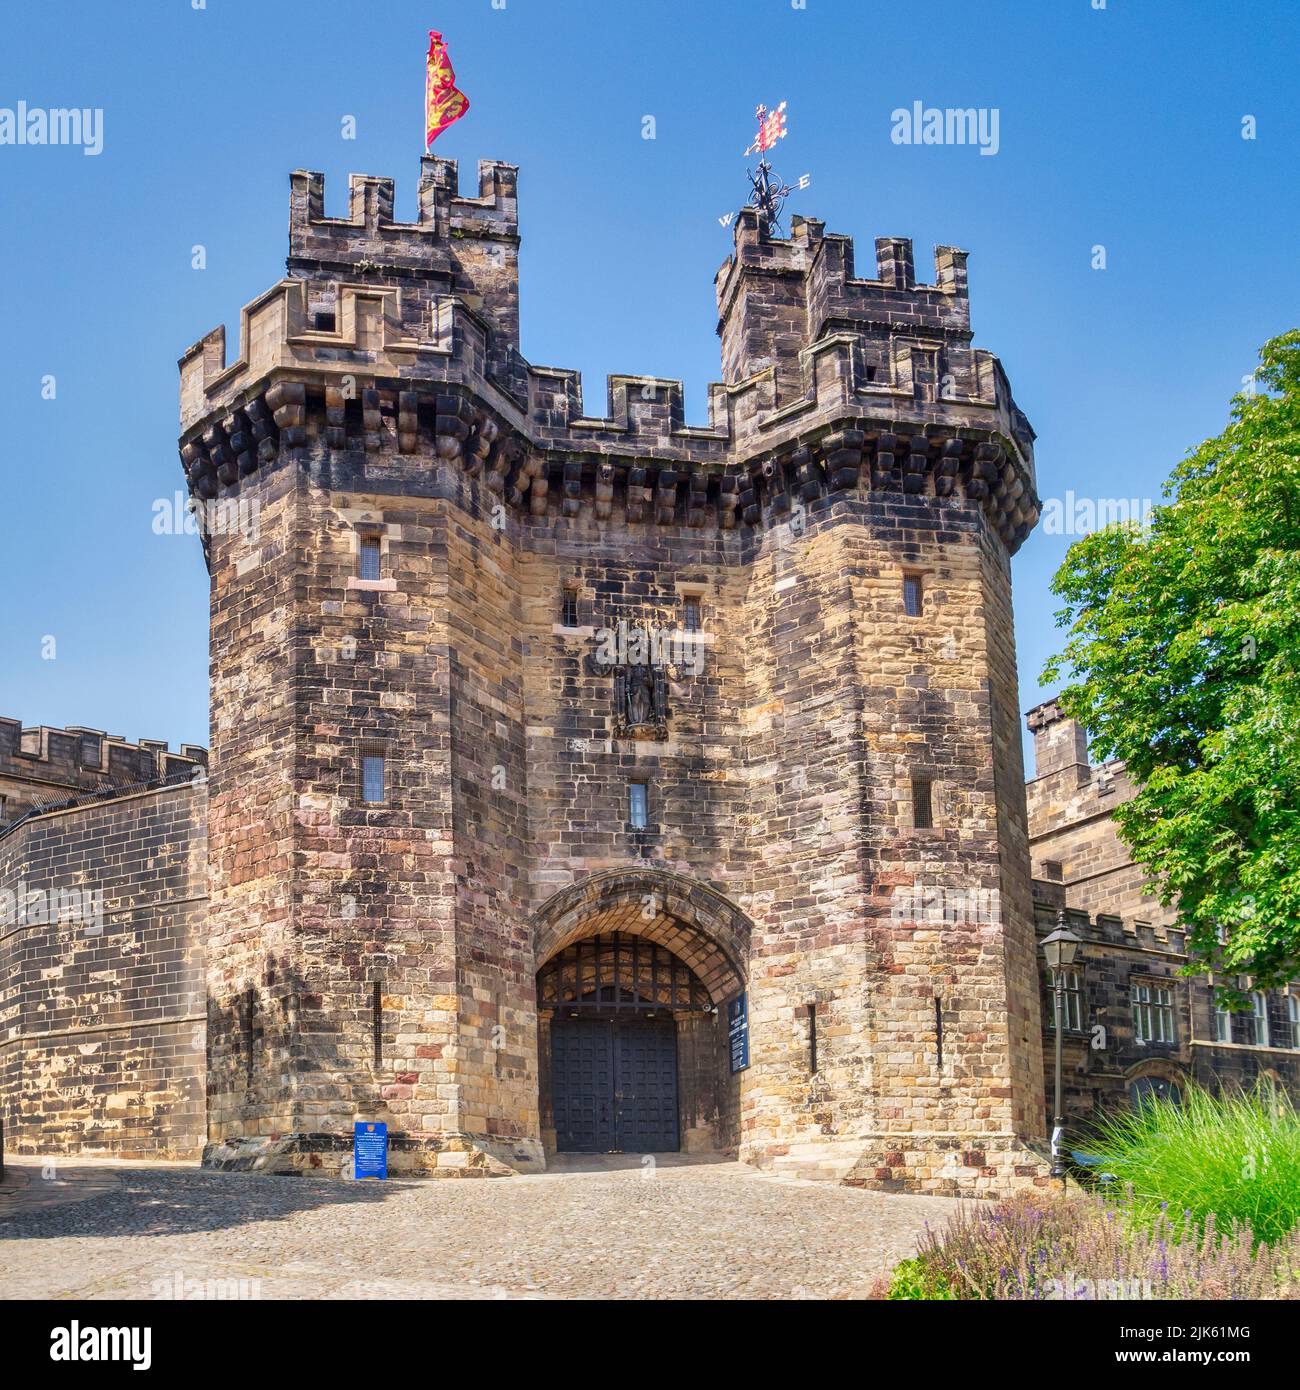 12 July 2019: Lancaster, UK - Lancaster Castle, the main entrance. It was Britain's longest serving prison until its closure in 2011. Stock Photo